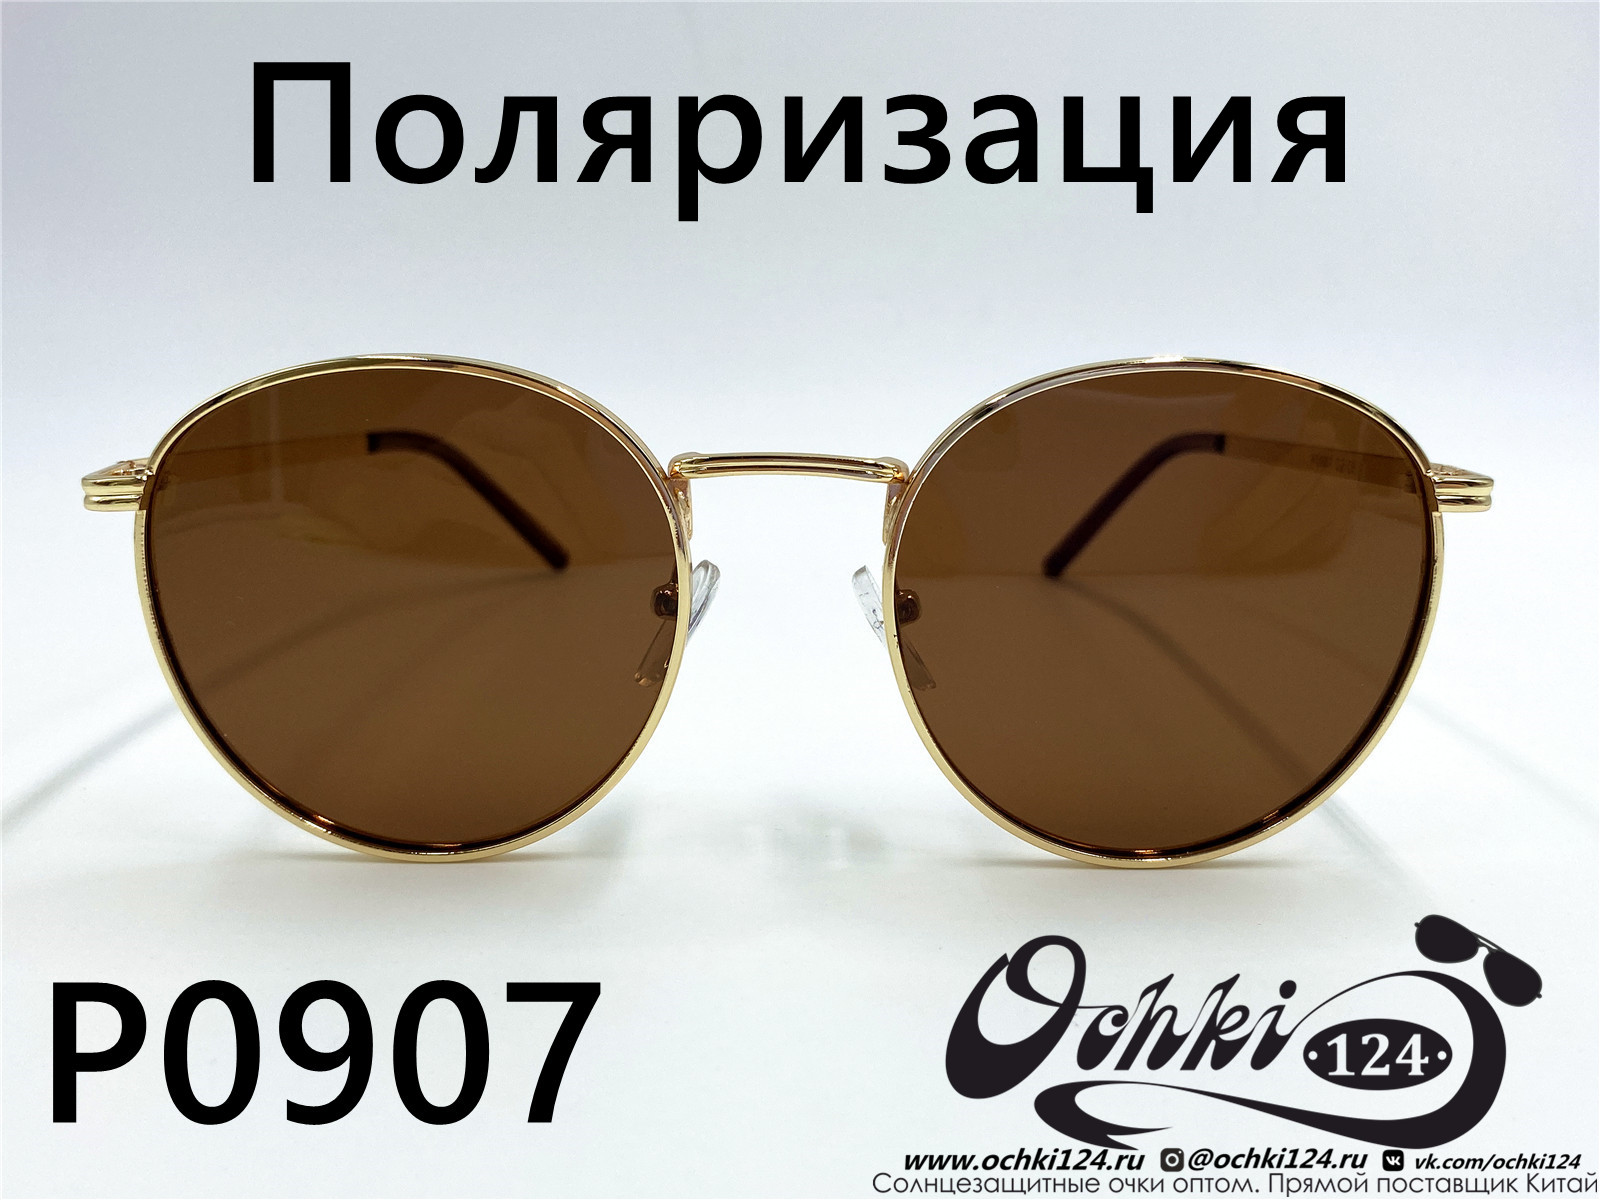  Солнцезащитные очки картинка 2022 Женские Поляризованные Круглые  P0907-2 